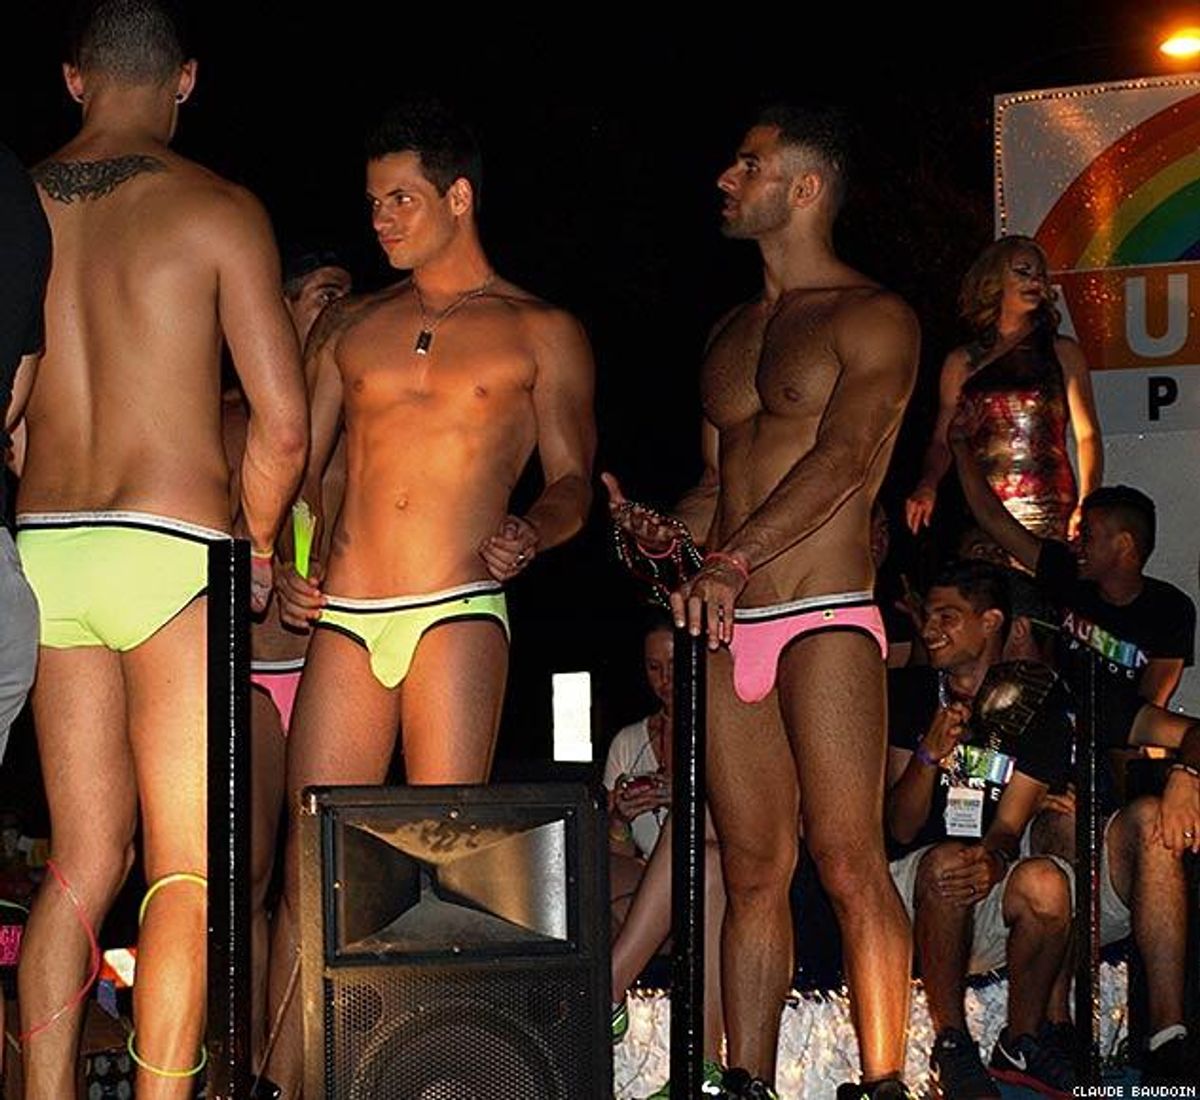 PHOTOS: Wild, Weird Austin Pride 2014